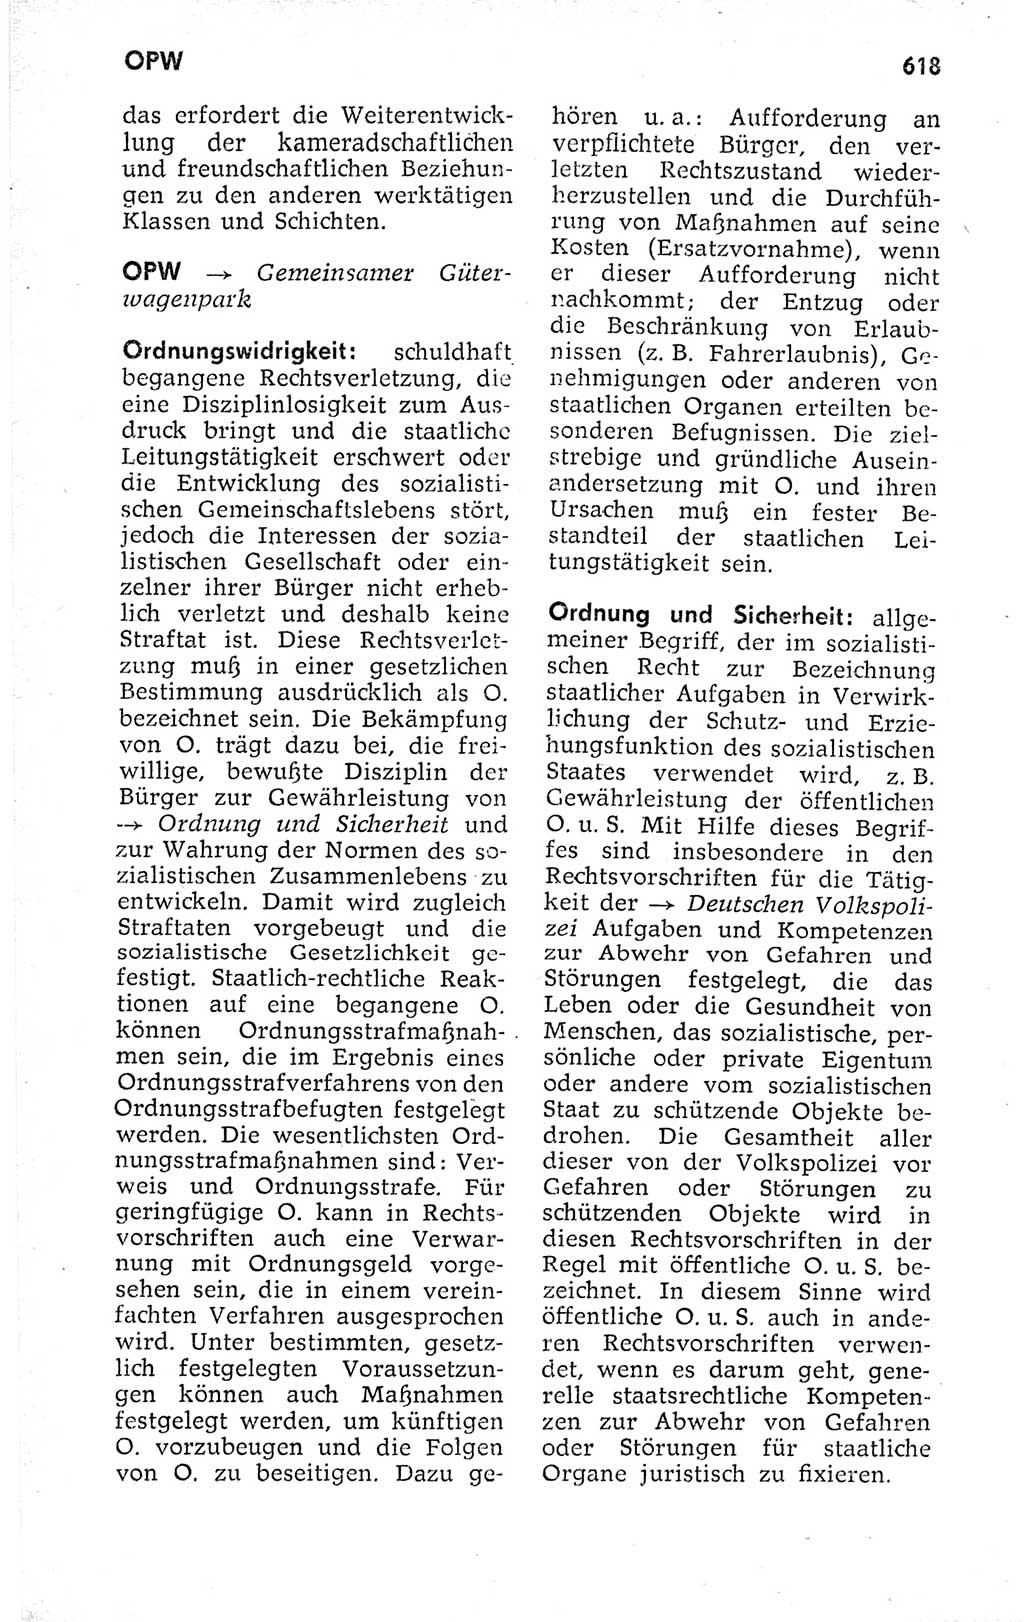 Kleines politisches Wörterbuch [Deutsche Demokratische Republik (DDR)] 1973, Seite 618 (Kl. pol. Wb. DDR 1973, S. 618)